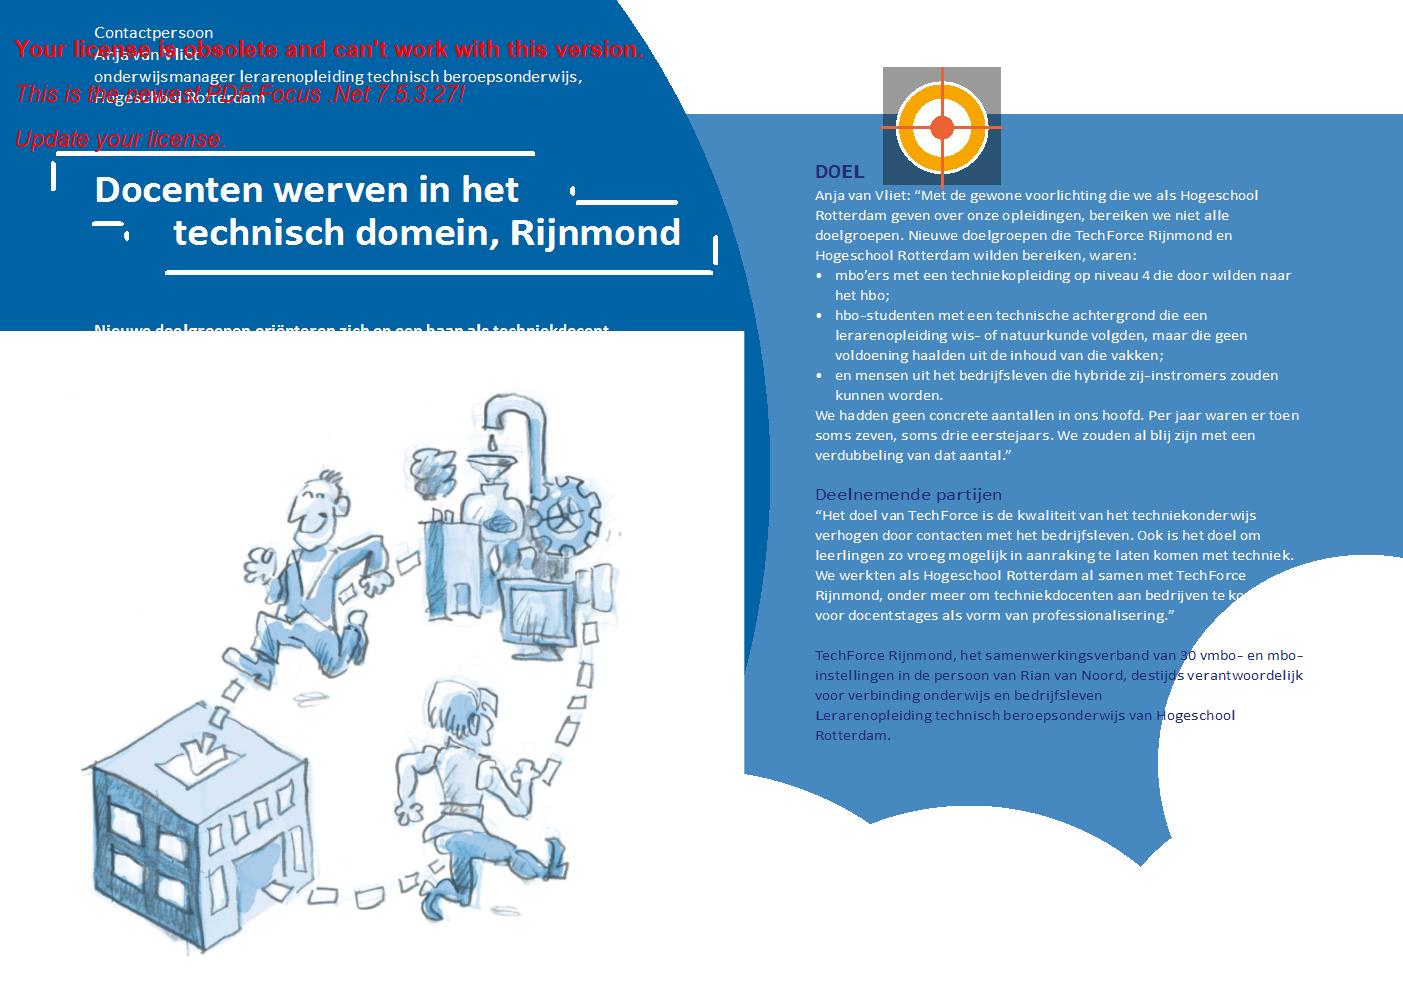 Docenten werven in het technisch domein - Rijnmond